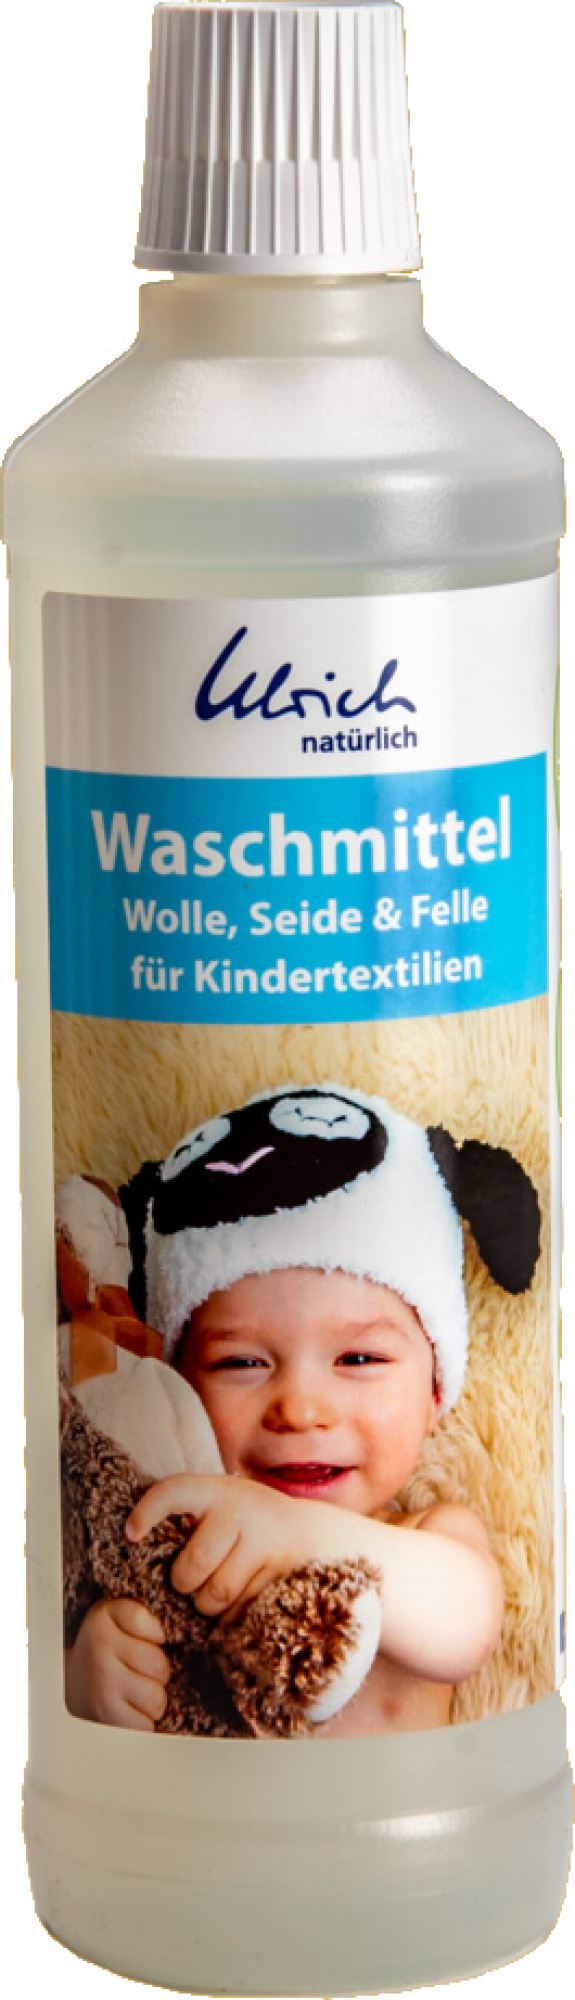 Ulrich natürlich Waschmittel für Wolle, Seide & Felle - Kindertextilien